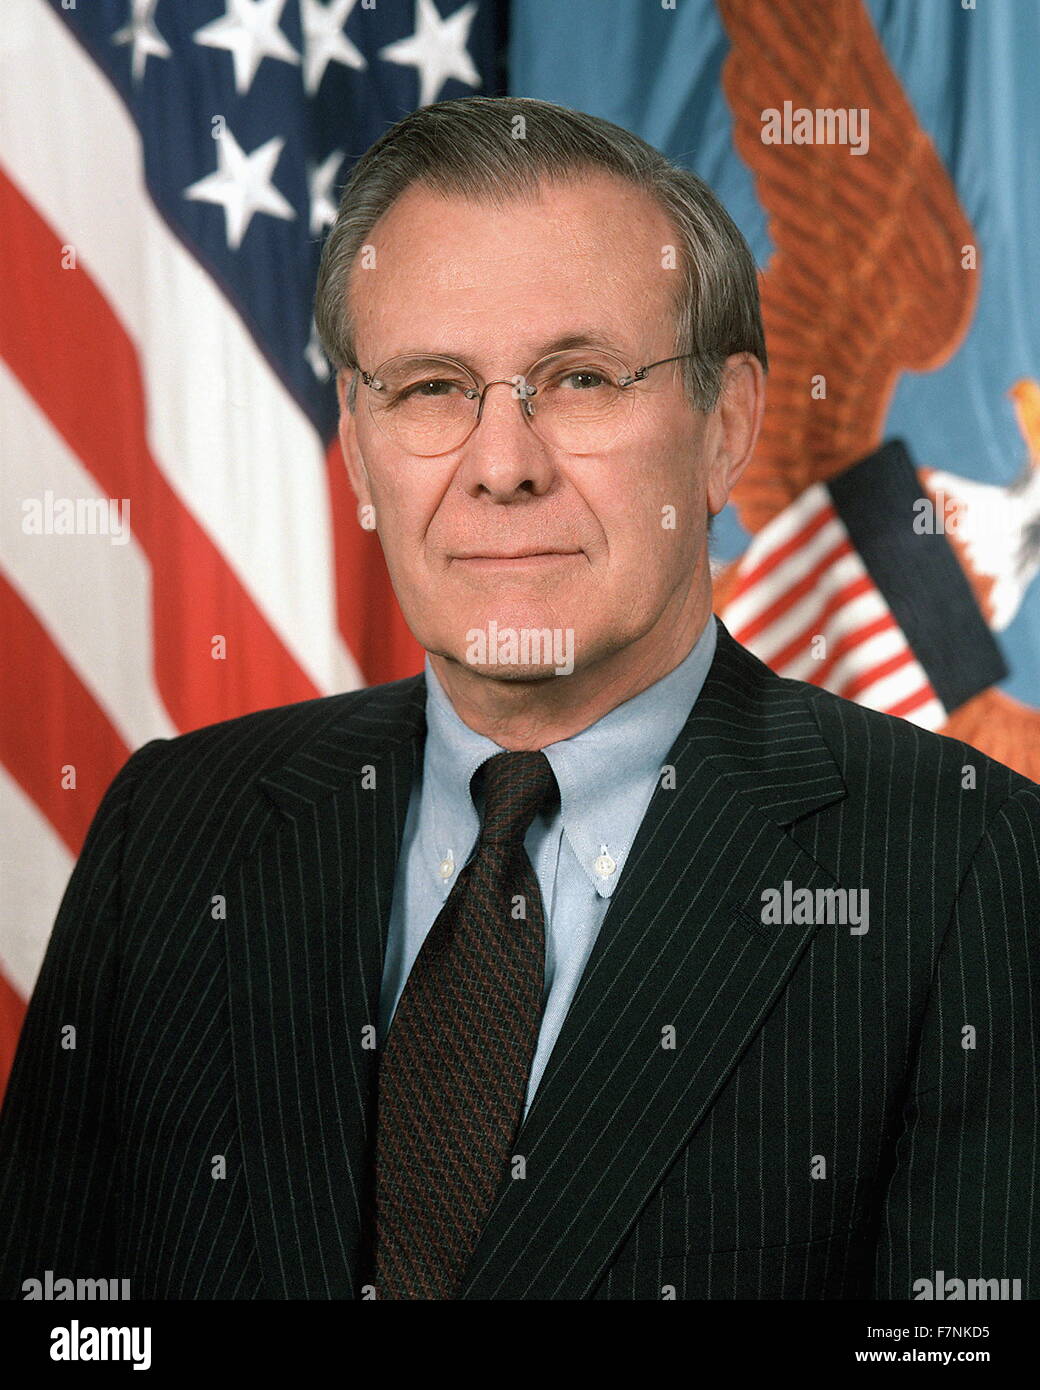 Donald Rumsfeld (nato il 9 luglio 1932), uomo politico americano e imprenditore. Il Segretario della Difesa dal 1975 al 1977 e dal 2001 al 2006 sotto il Presidente George W Bush. Stati Uniti Membro del Congresso da Illinois (1962-1969), Consigliere del Presidente (1969-1973), gli Stati Uniti Rappresentante Permanente presso la NATO (1973-1974), e il capo del personale della Casa Bianca (1974-1975). Foto Stock